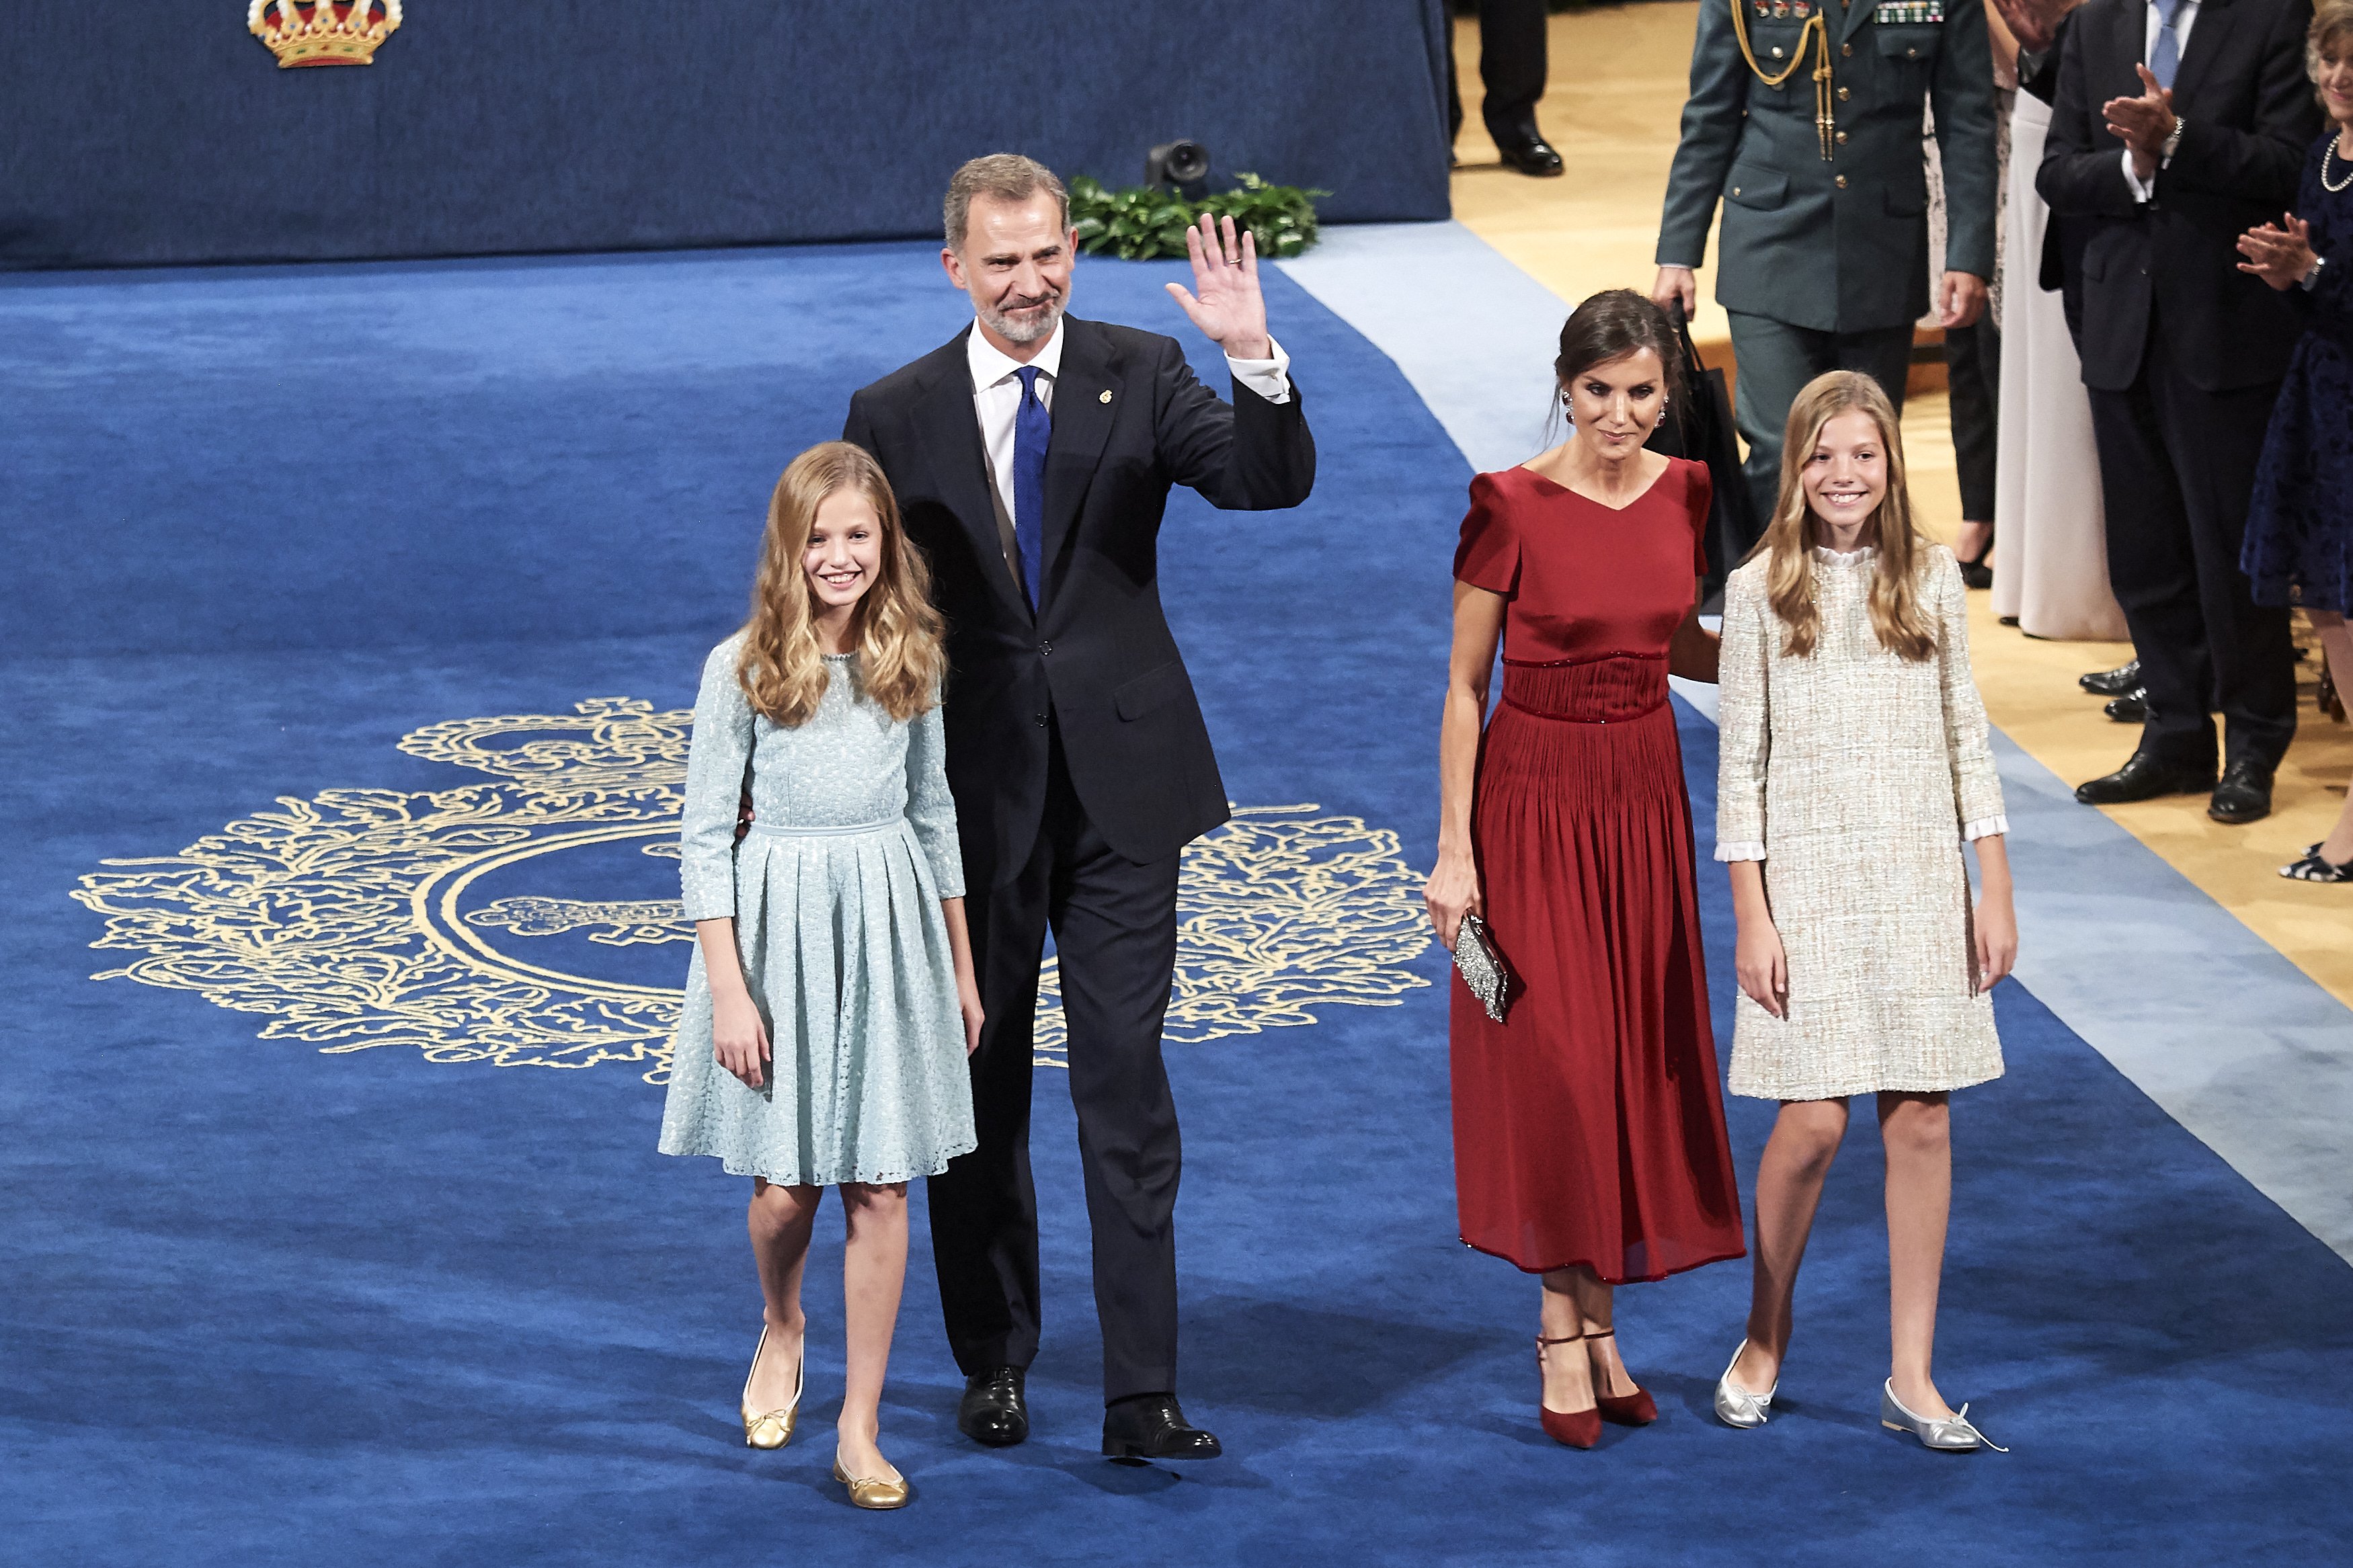 Familia real española durante los Premios Princesa de Asturia 2019, en Oviedo, España. | Foto: Getty Images